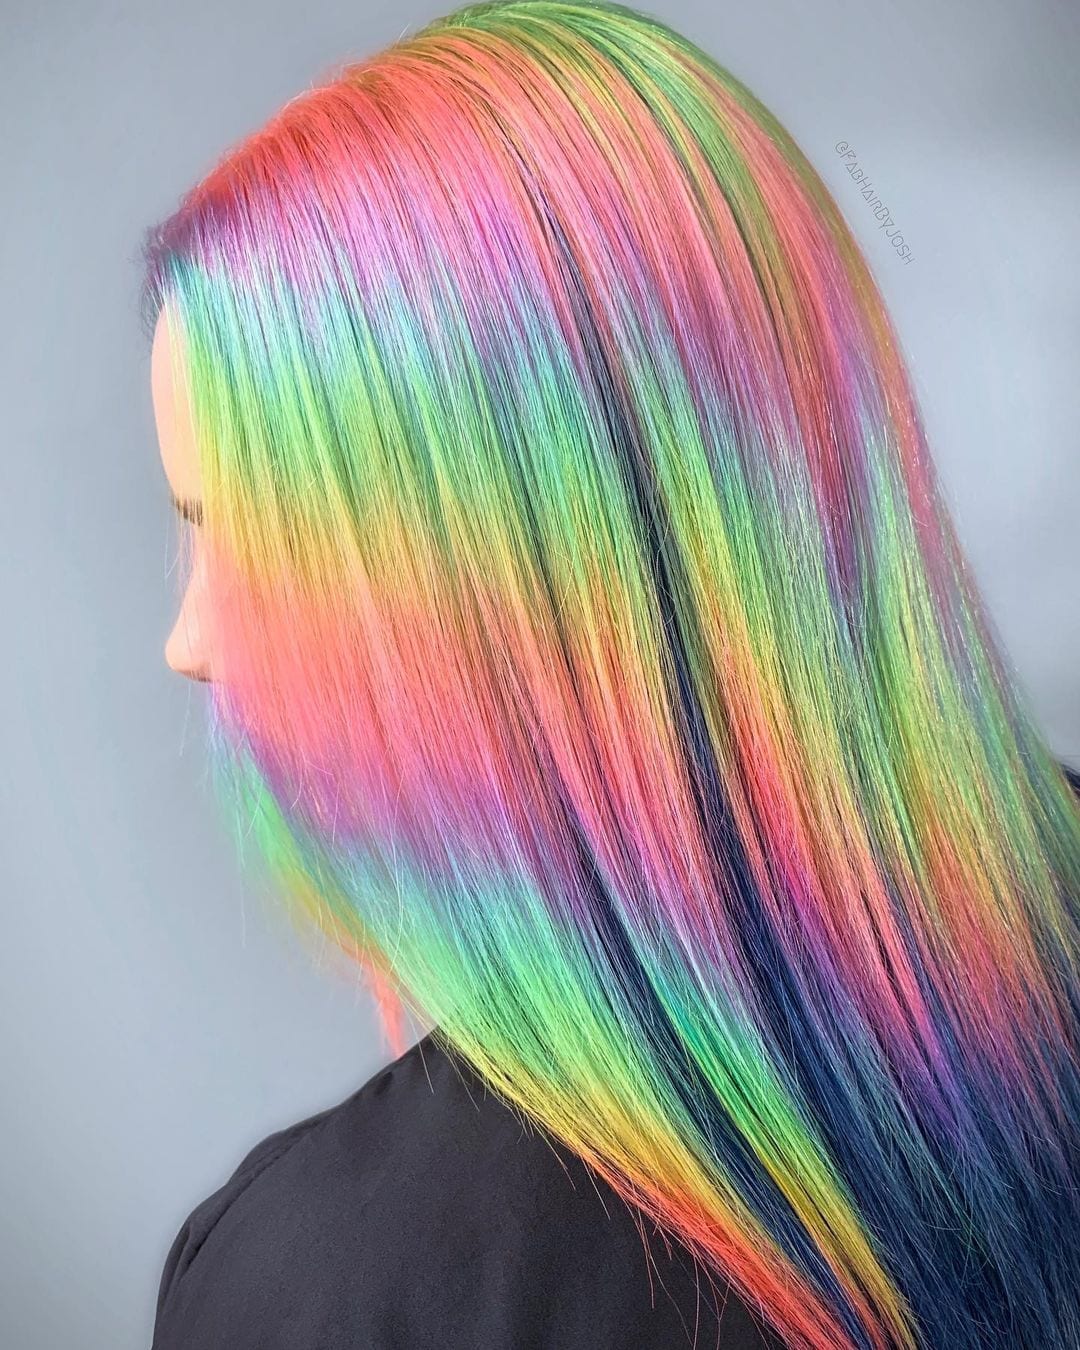 Helder regenboogkleurig haar (holografisch haar) met shimmers van alle kleuren van de regenboog